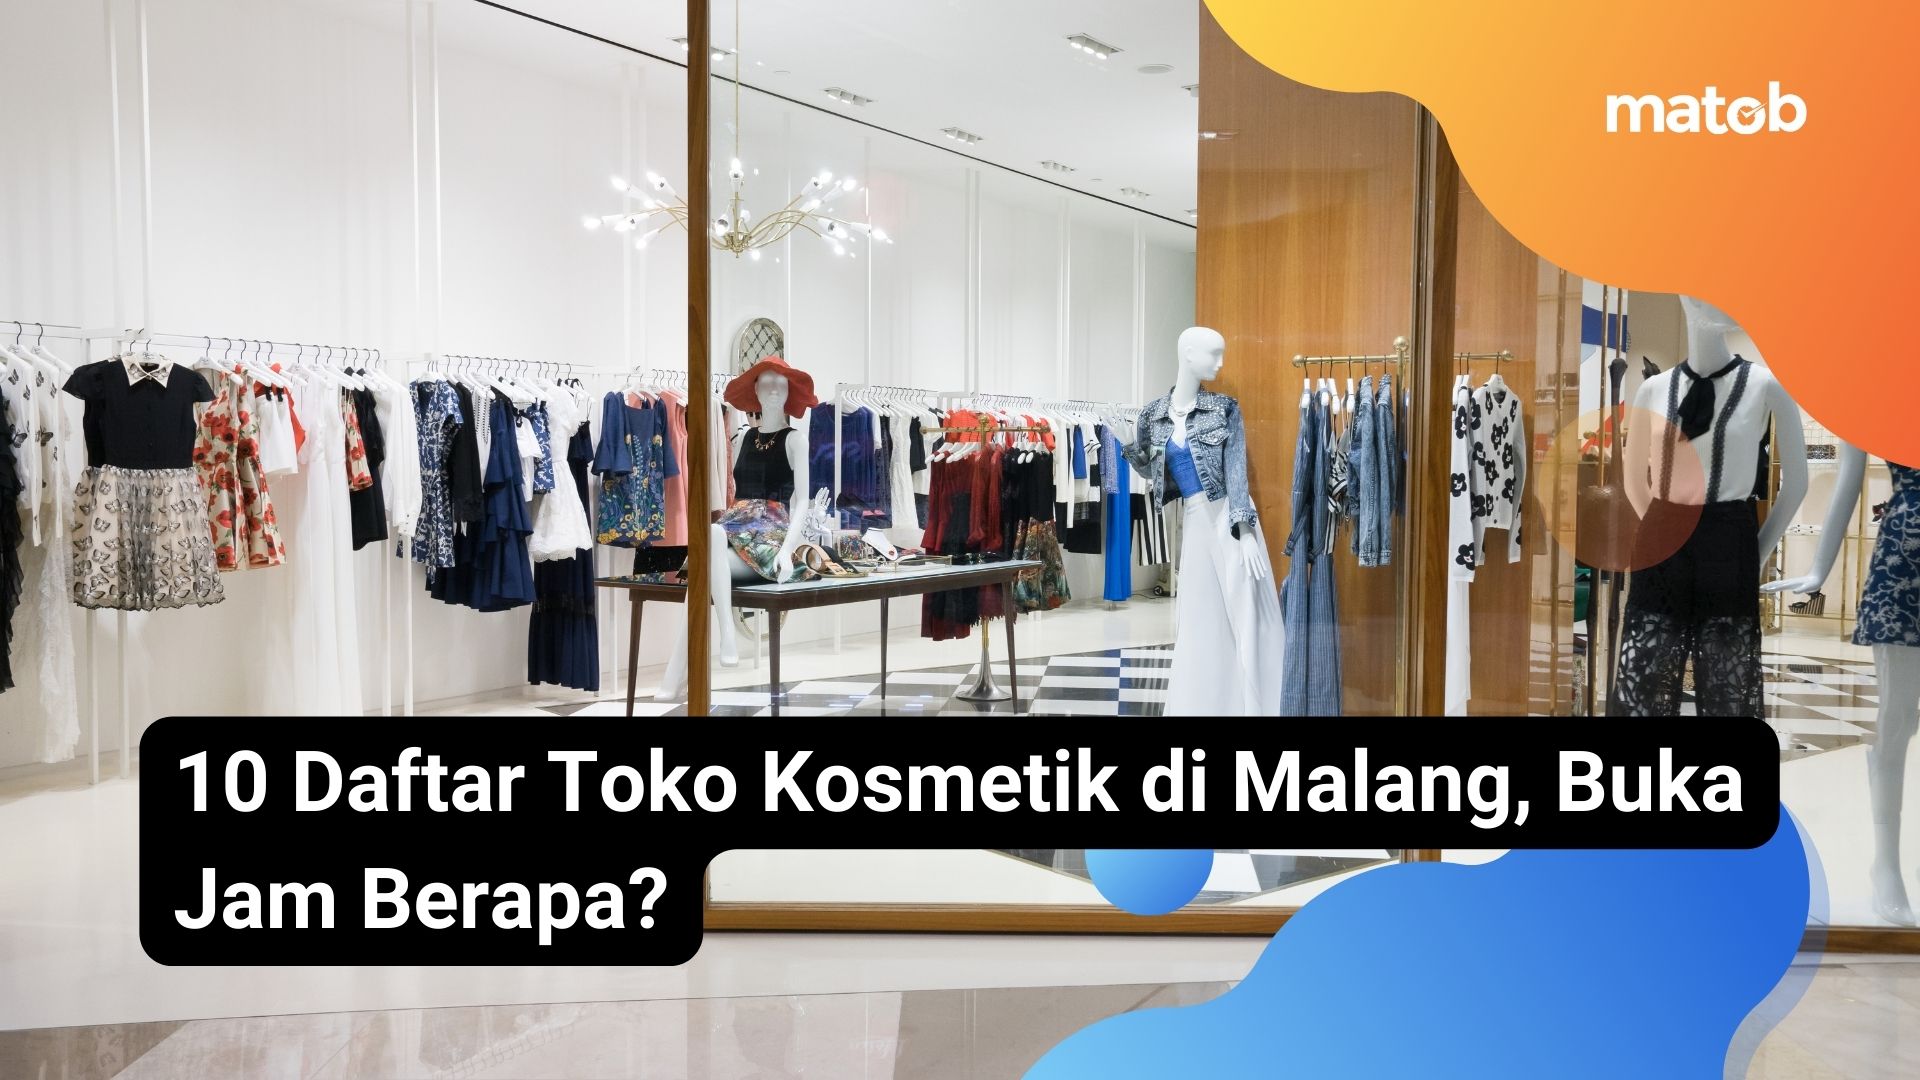 10 Daftar Toko Kosmetik di Malang, Buka Jam Berapa?